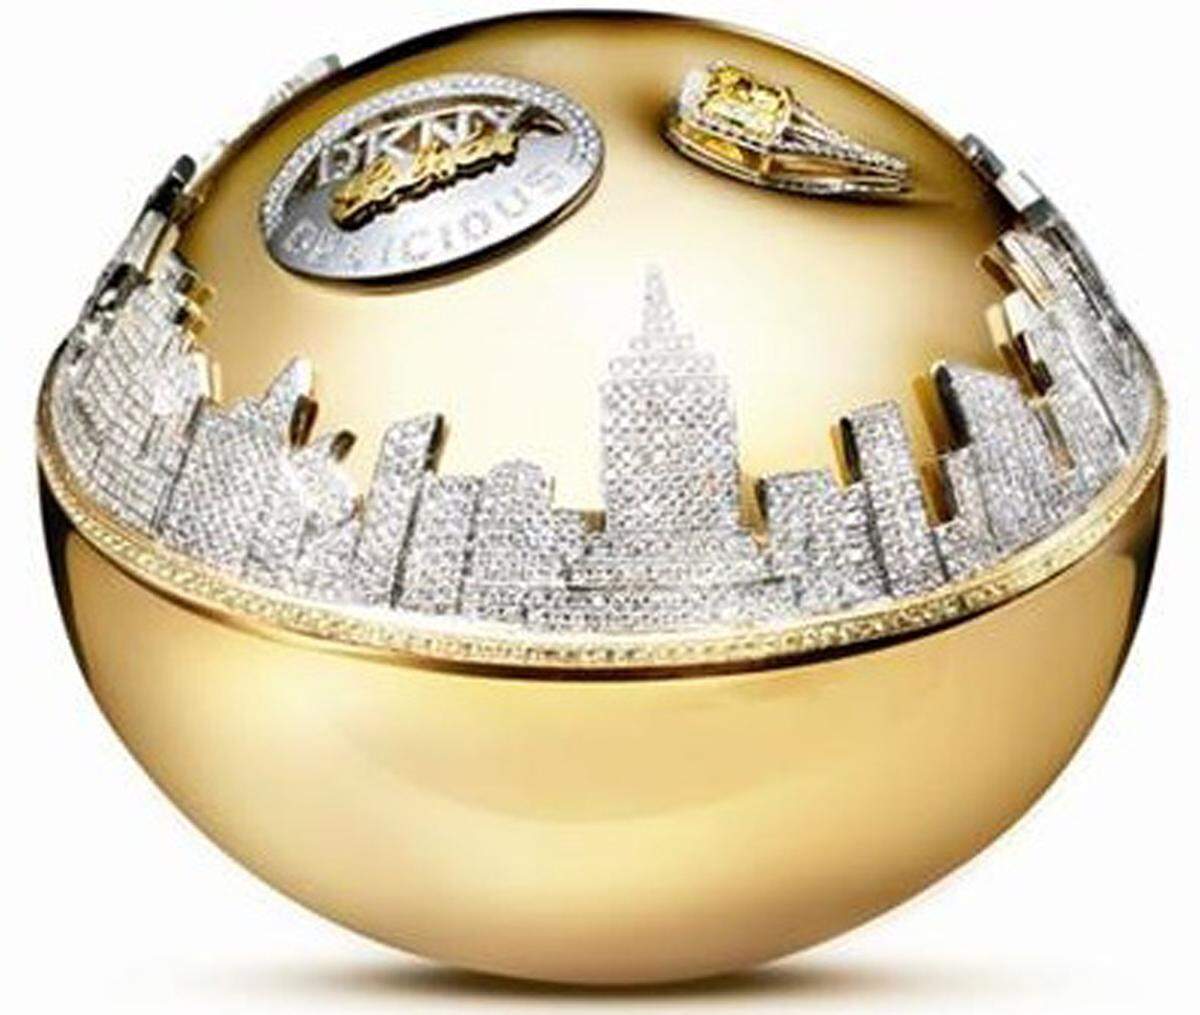 Der Spezial-Flakon des Parfums DKNY Golden Delicious setzt sich aus 14-karätigen Gelb- und Weißgold zusammen, sowie aus 183 gelben Saphiren, 2700 weißen Diamanten und einem 2,43-karätigen gelben Diamanten. Kostenpunkt: 1 Million Dollar.